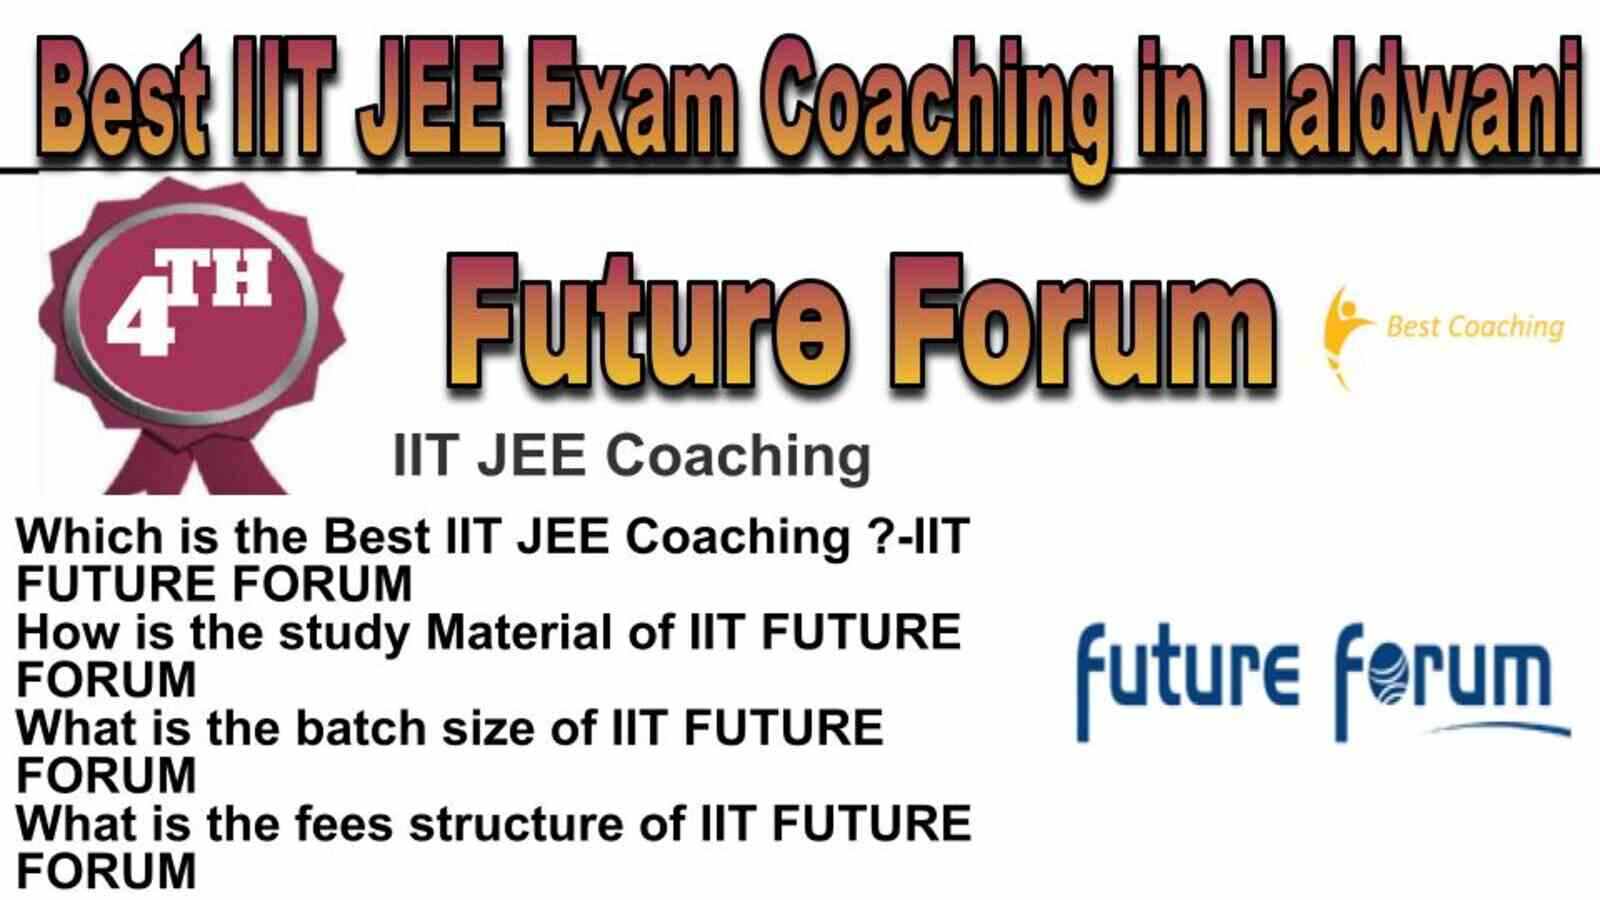 Rank 4 Best IIT JEE Coaching in Haldwani